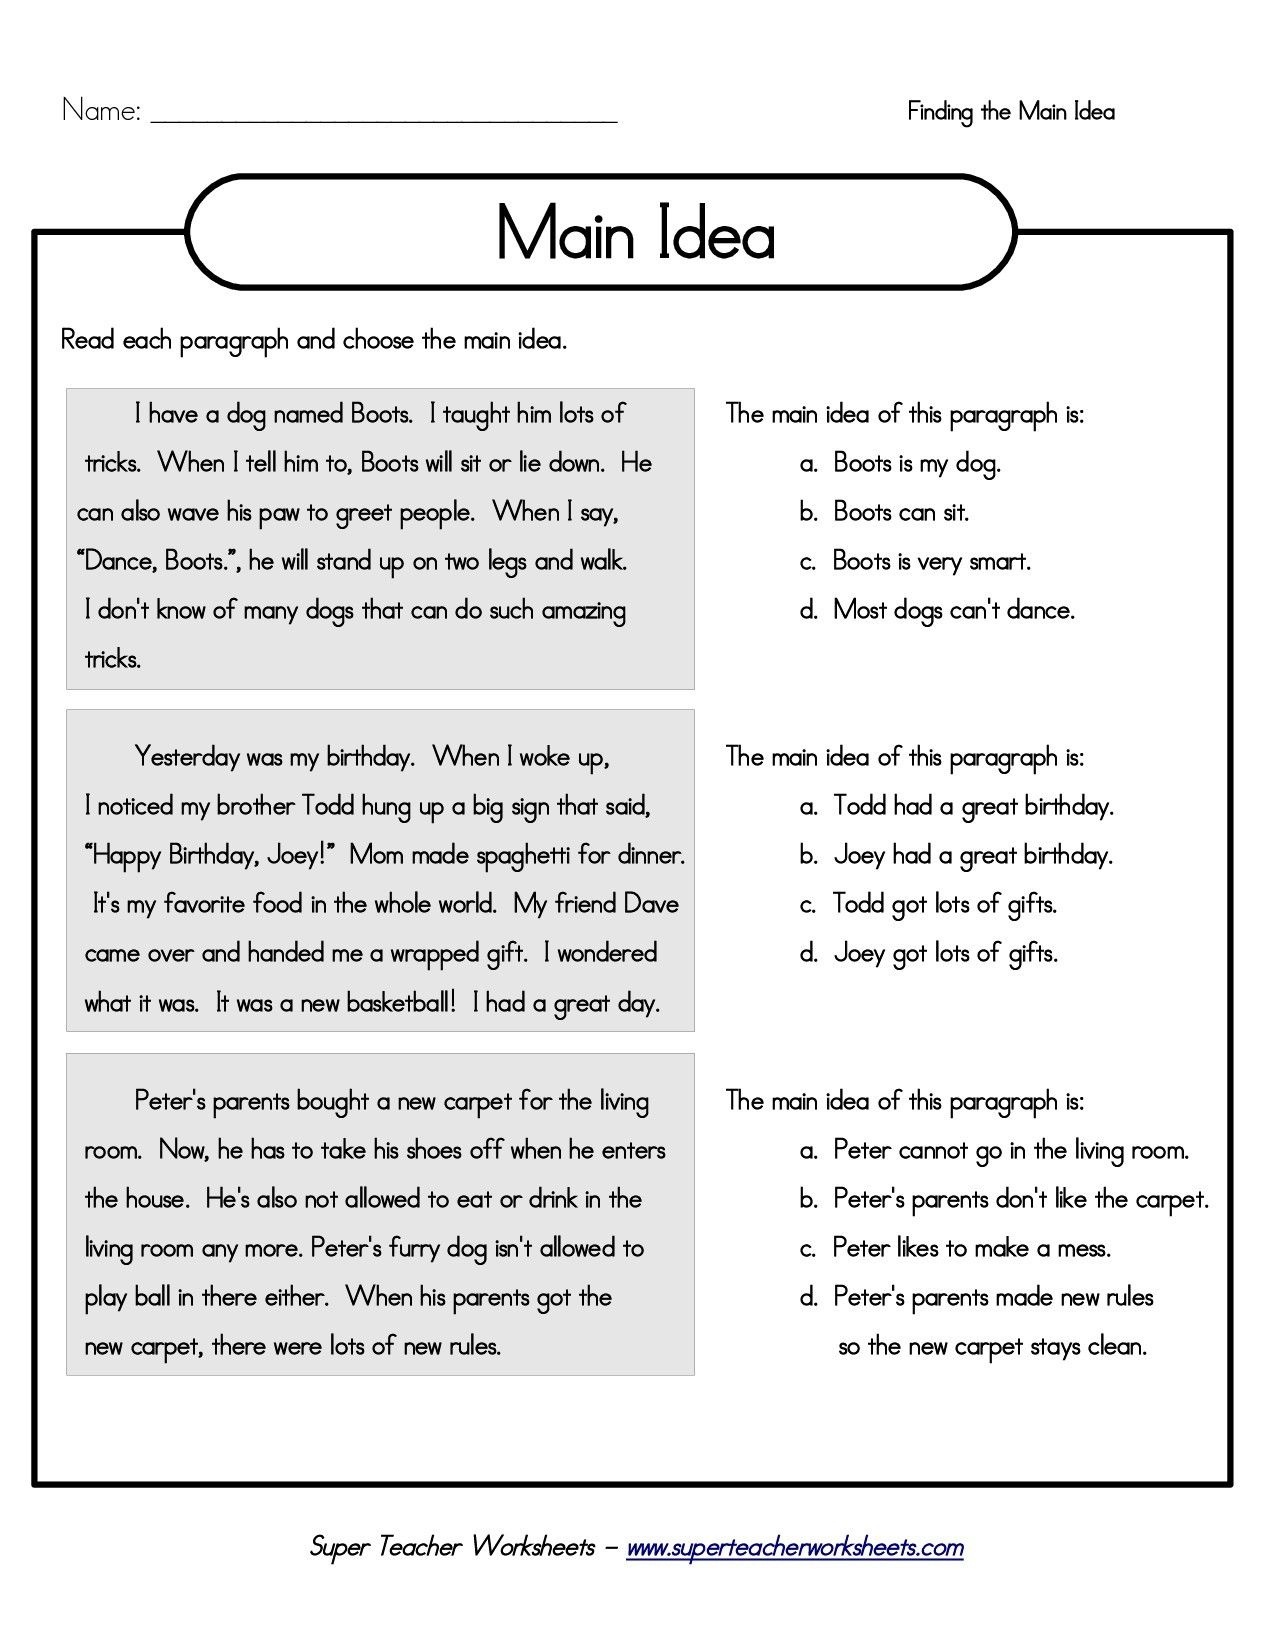 Printable 5Th Grade Main Idea Worksheets | My Classroom | Main Idea - Free Printable Main Idea Worksheets